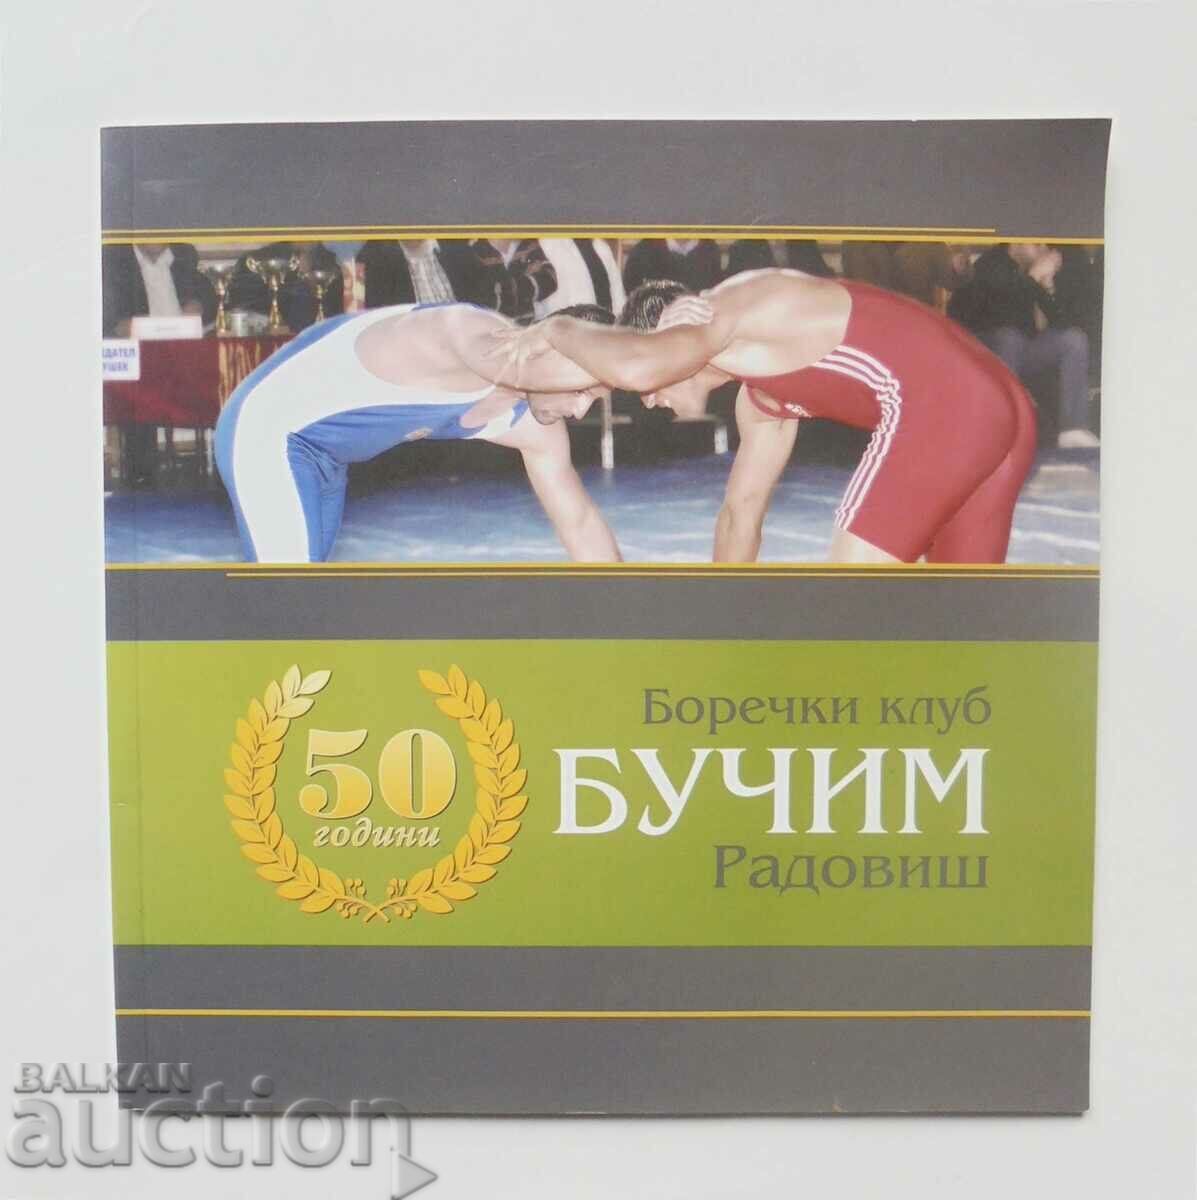 50 de ani de club de lupte „Buchim” - Radovish 2012